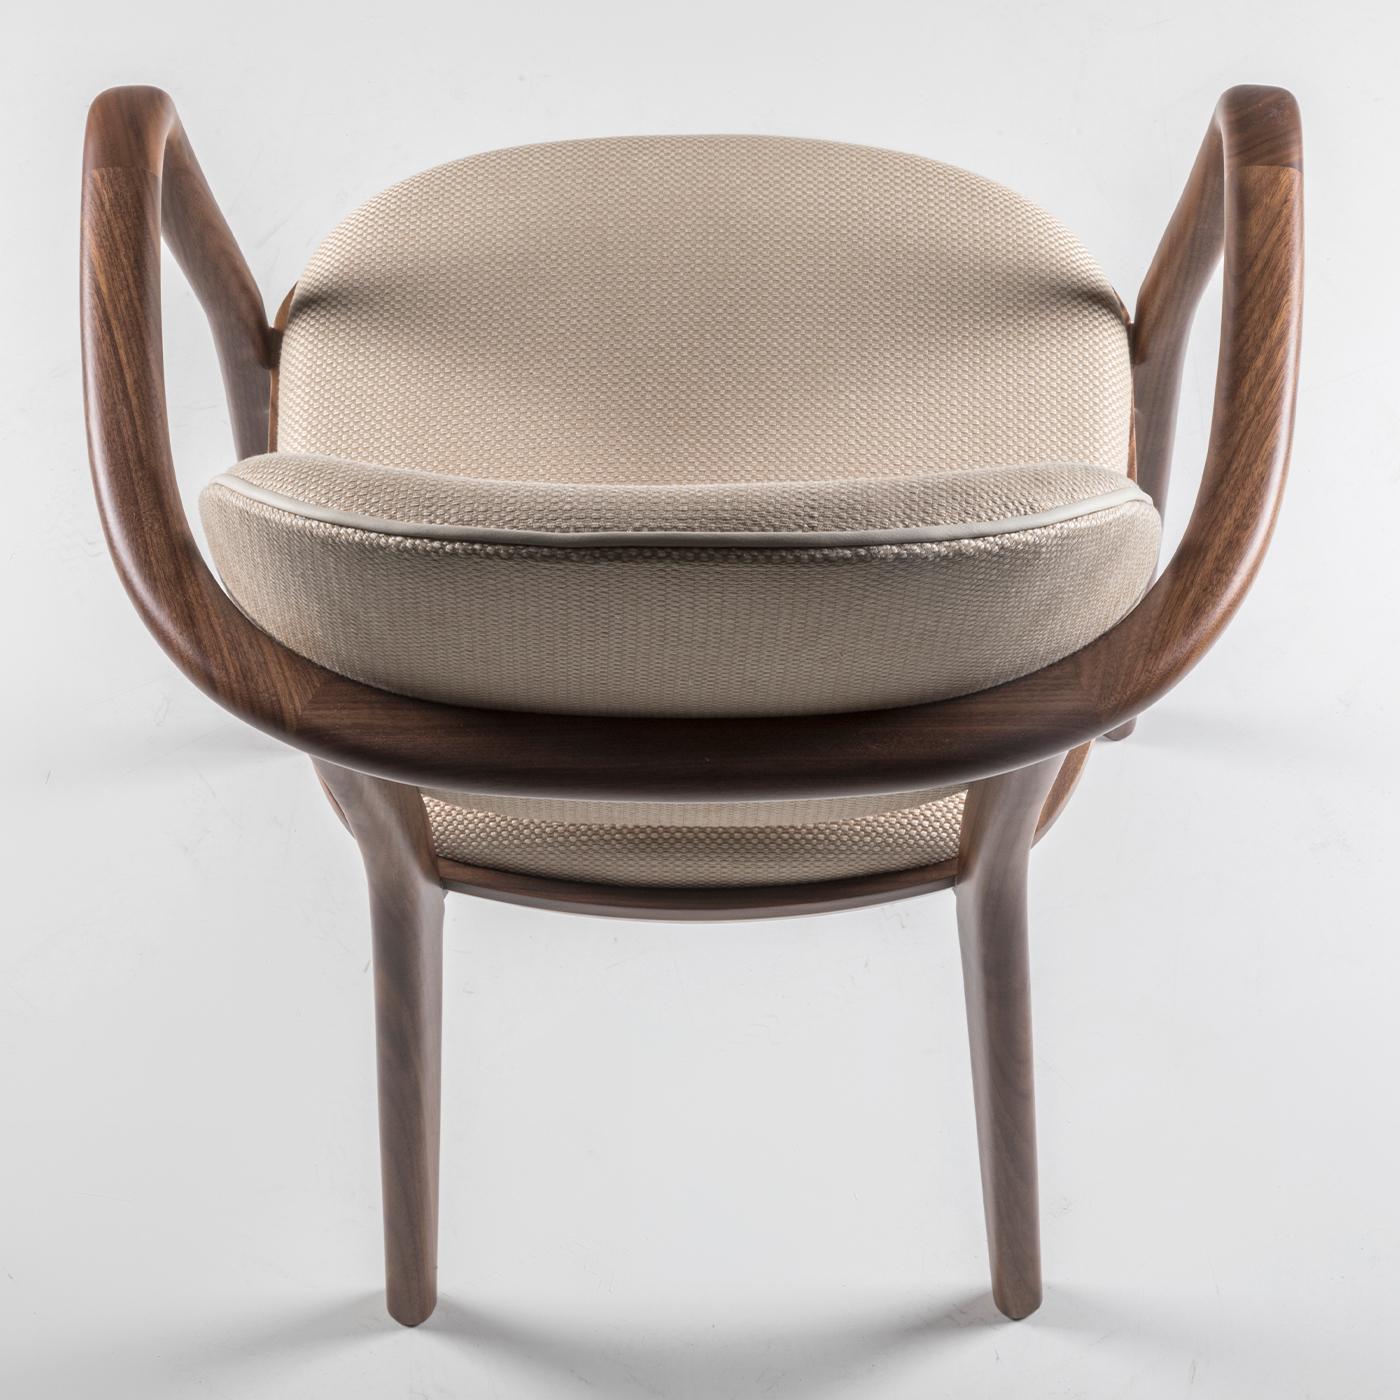 Affichant une combinaison de formes classiques et modernes, la chaise de salle à manger Giulietta conférera une élégance sans effort dans une maison d'inspiration moderne et du milieu du siècle. Le cadre en noyer Canaletto massif se caractérise par